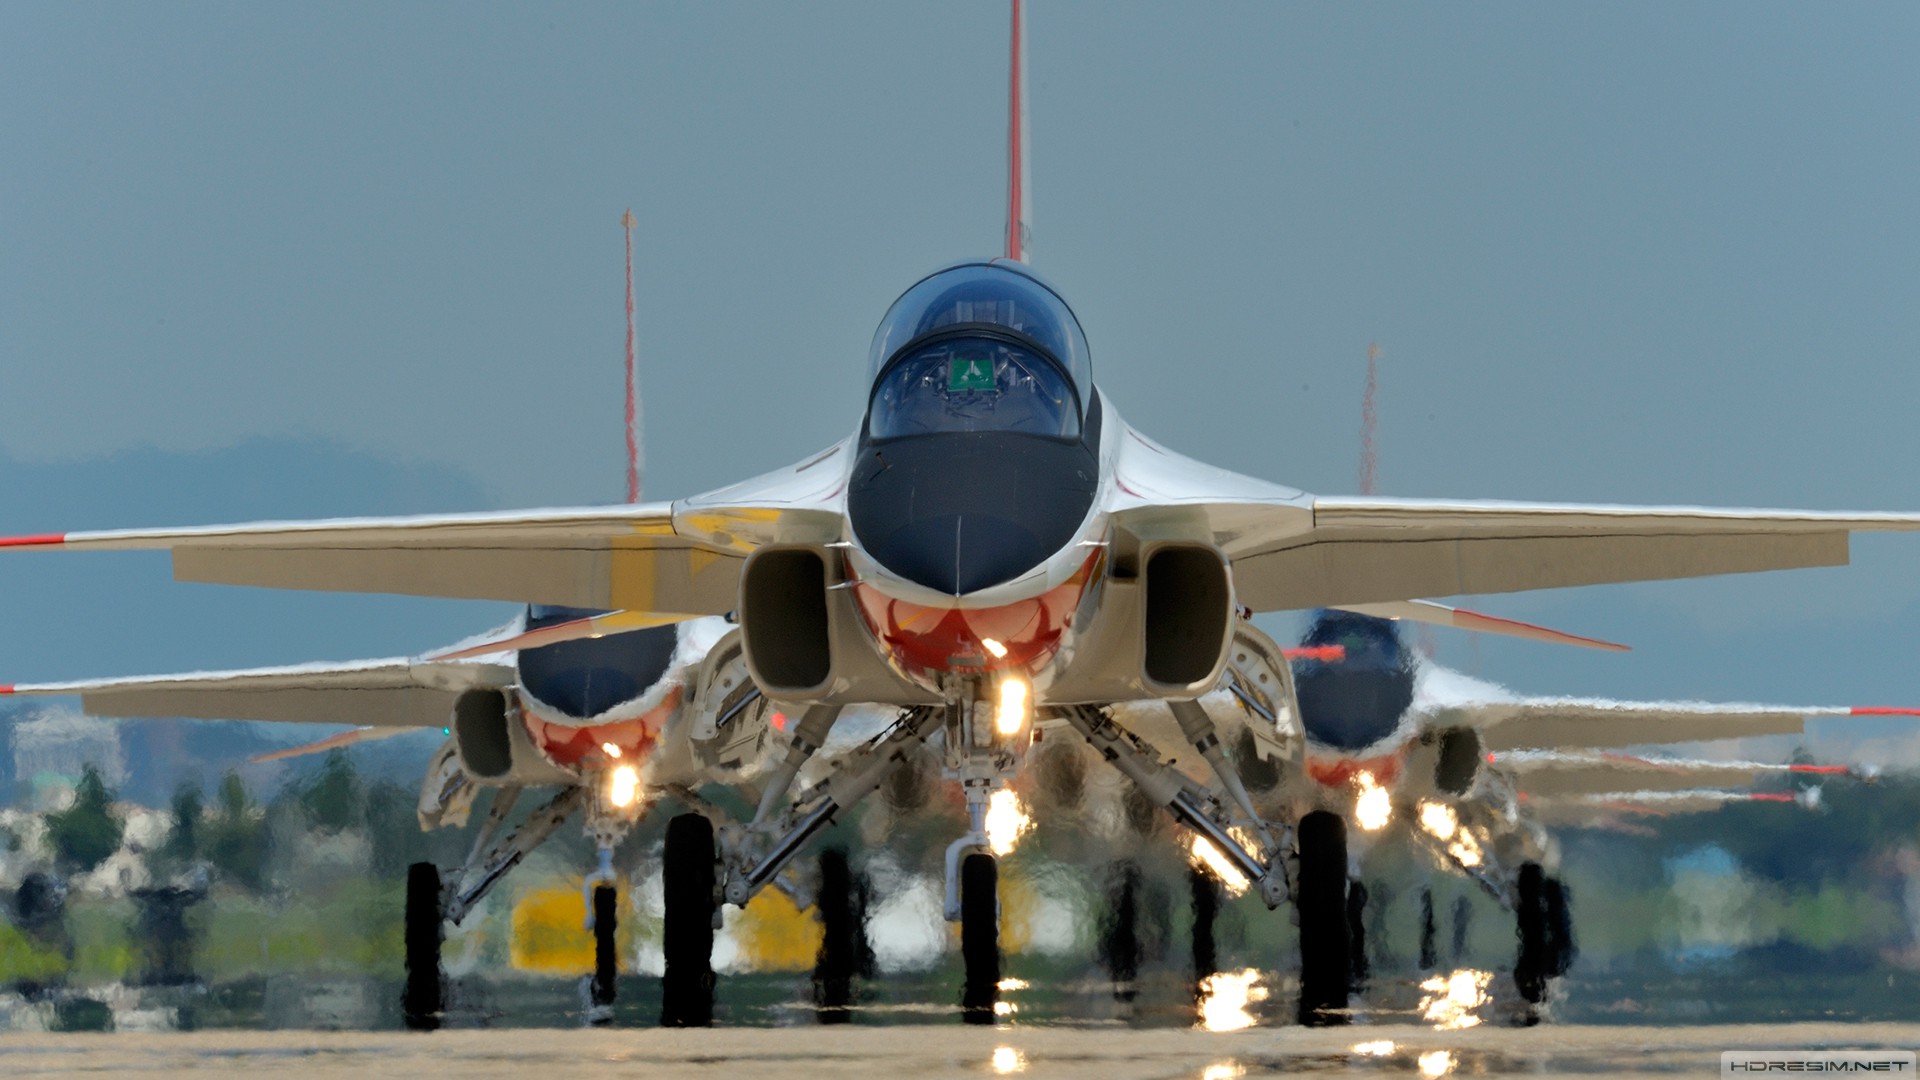 savaş uçağı,t-50,golden eagle,kai,süpersonik,eğitim uçağı